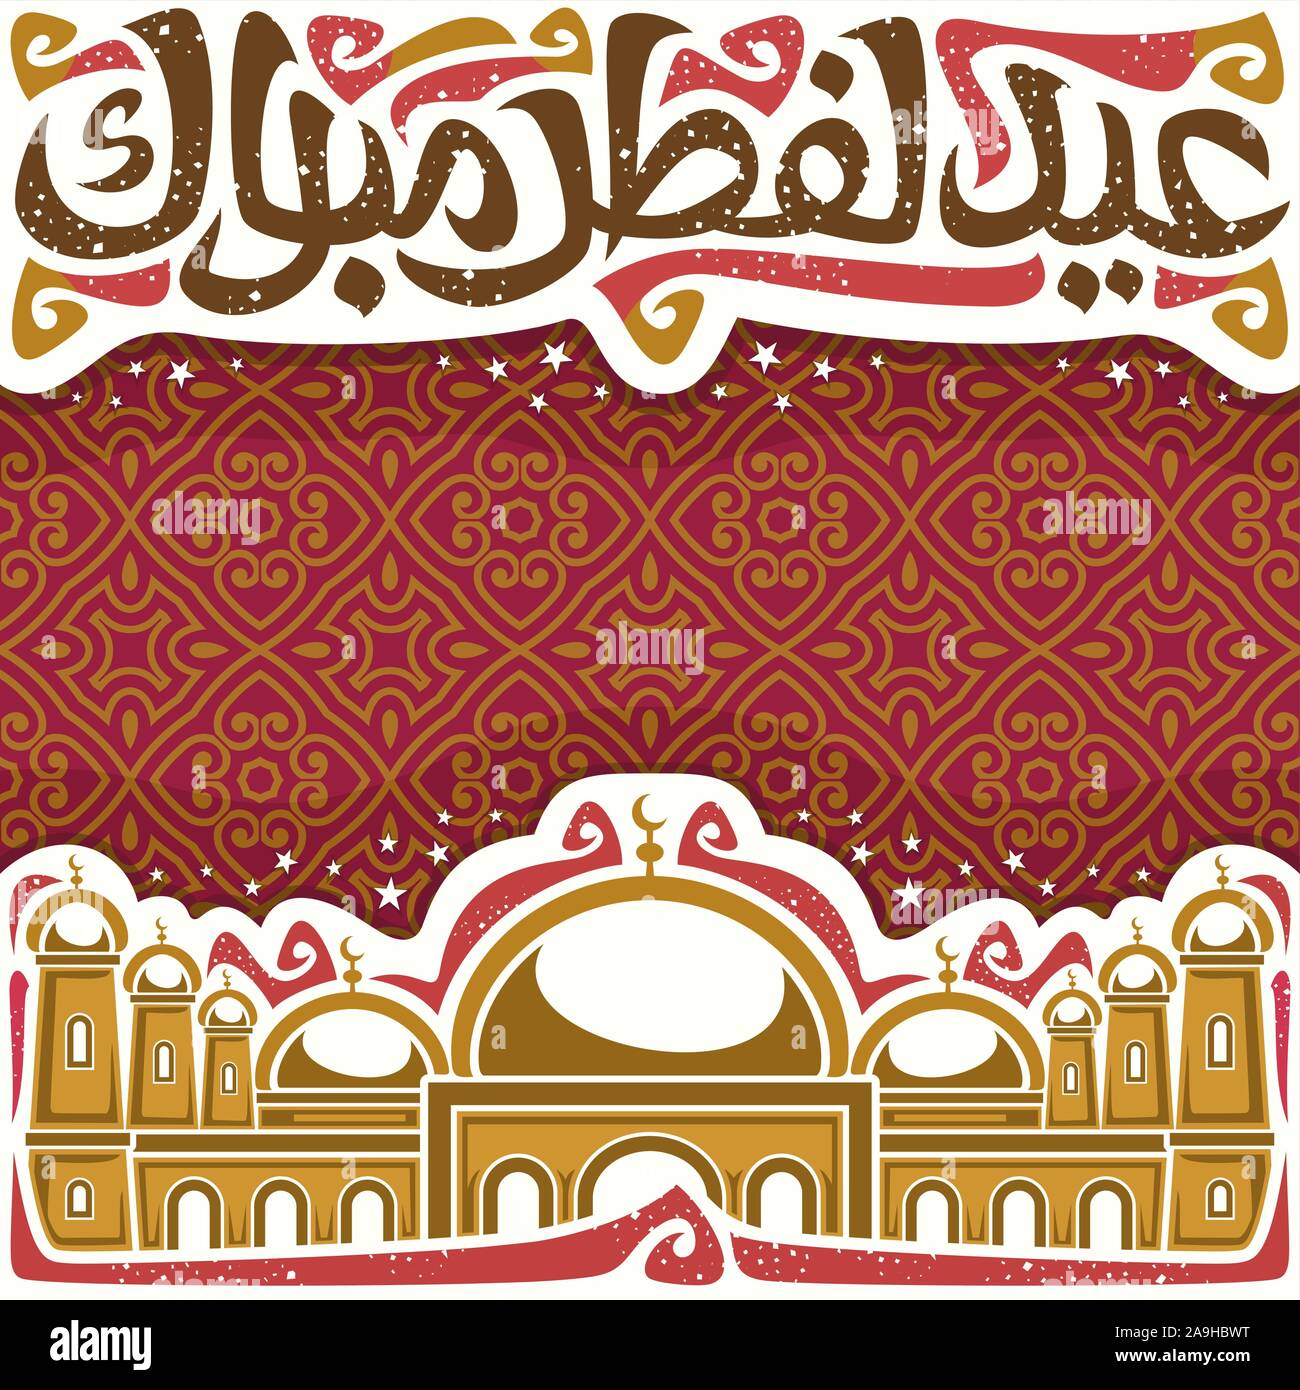 Vektor Plakat für Urlaub, ebenso wie das Eid al-Adha mit Kopie Raum, weißer Schlagzeile mit gedeiht, kalligraphische Schrift für Worte Eid al Fitr Mubarak in Arabisch, mosq Stock Vektor